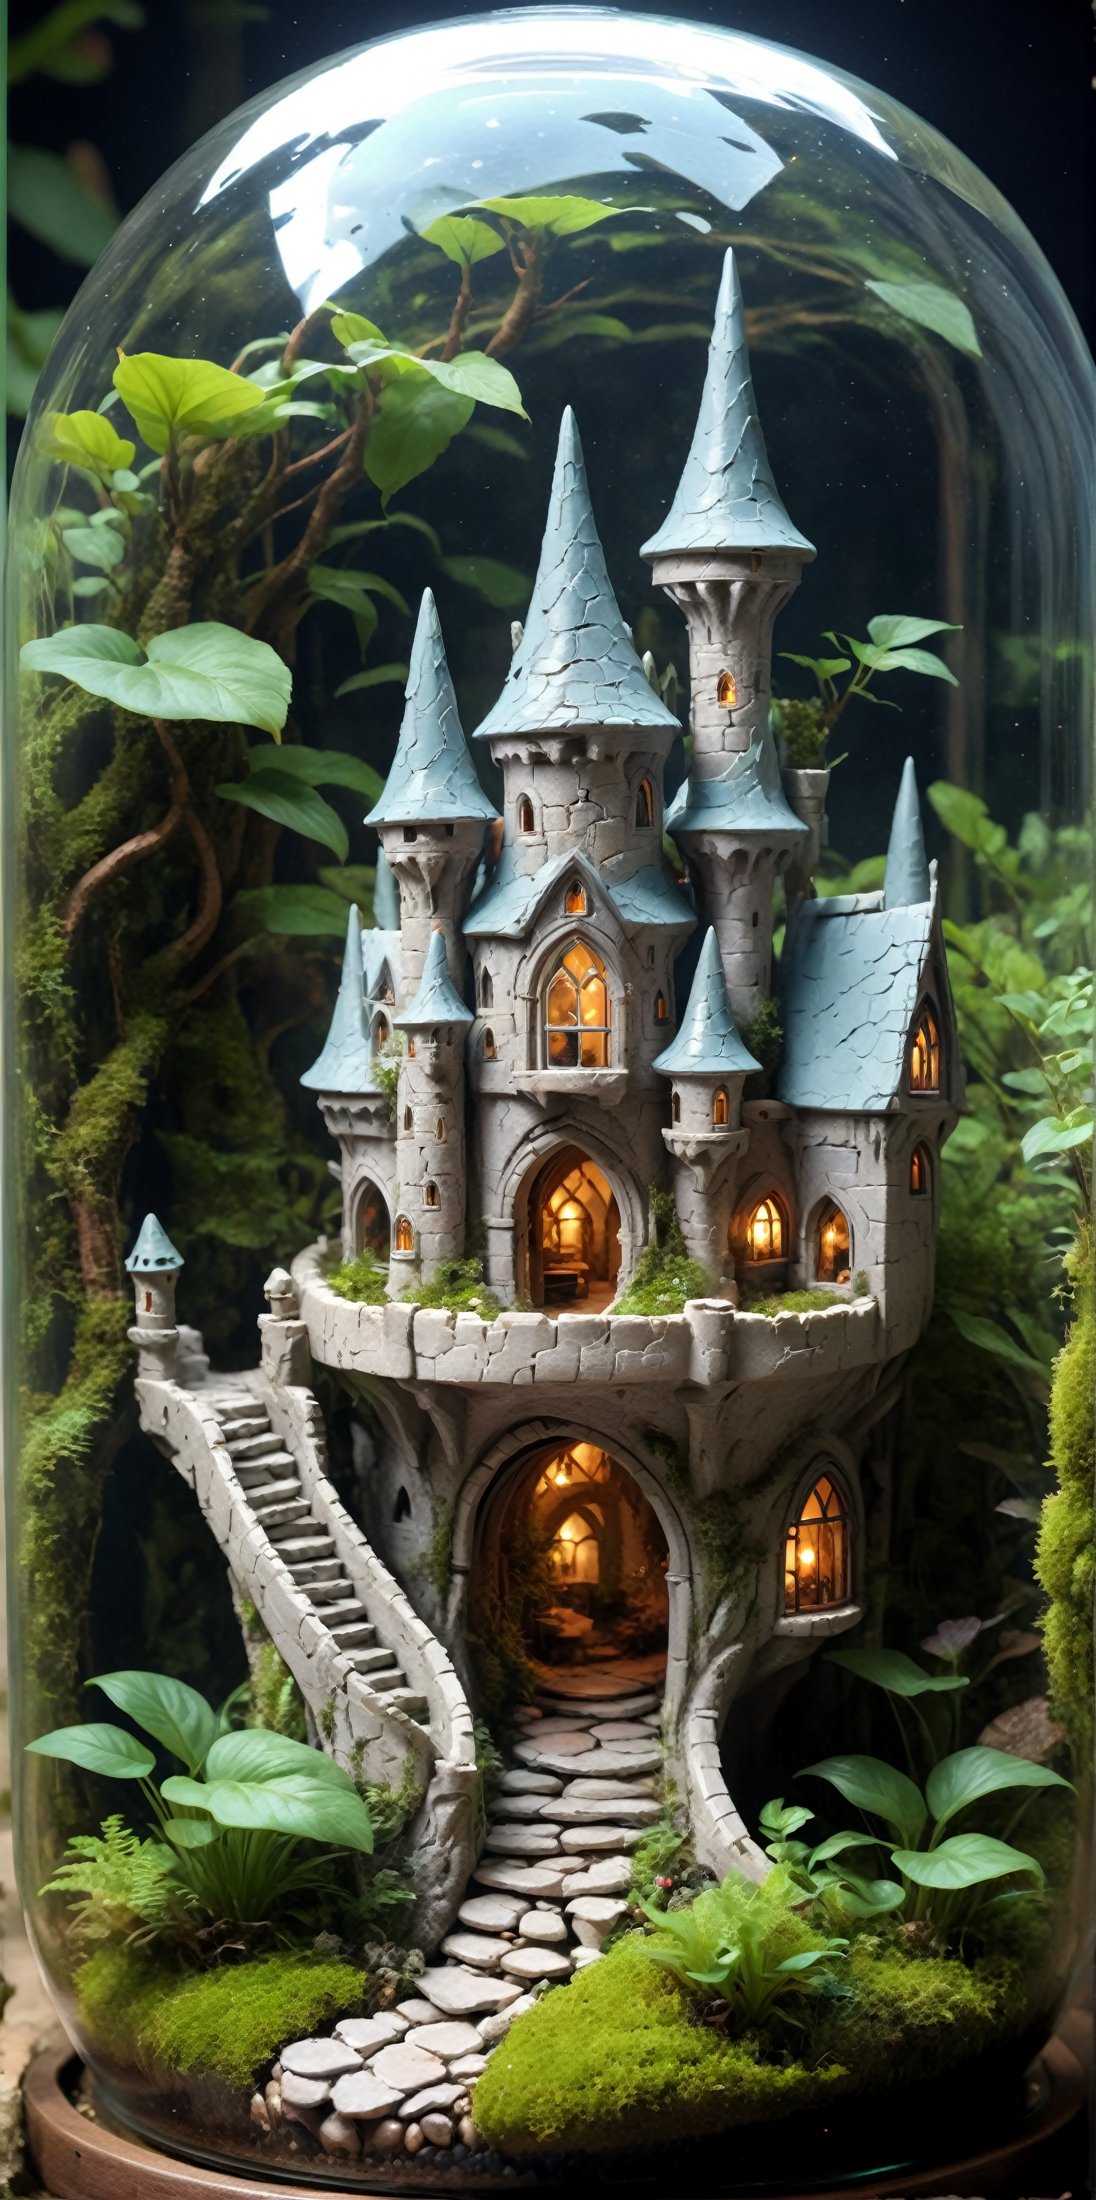 //quality, (masterpiece:1.4), (detailed), ((,best quality,)),//A mini elven castle inside a terrarium, 